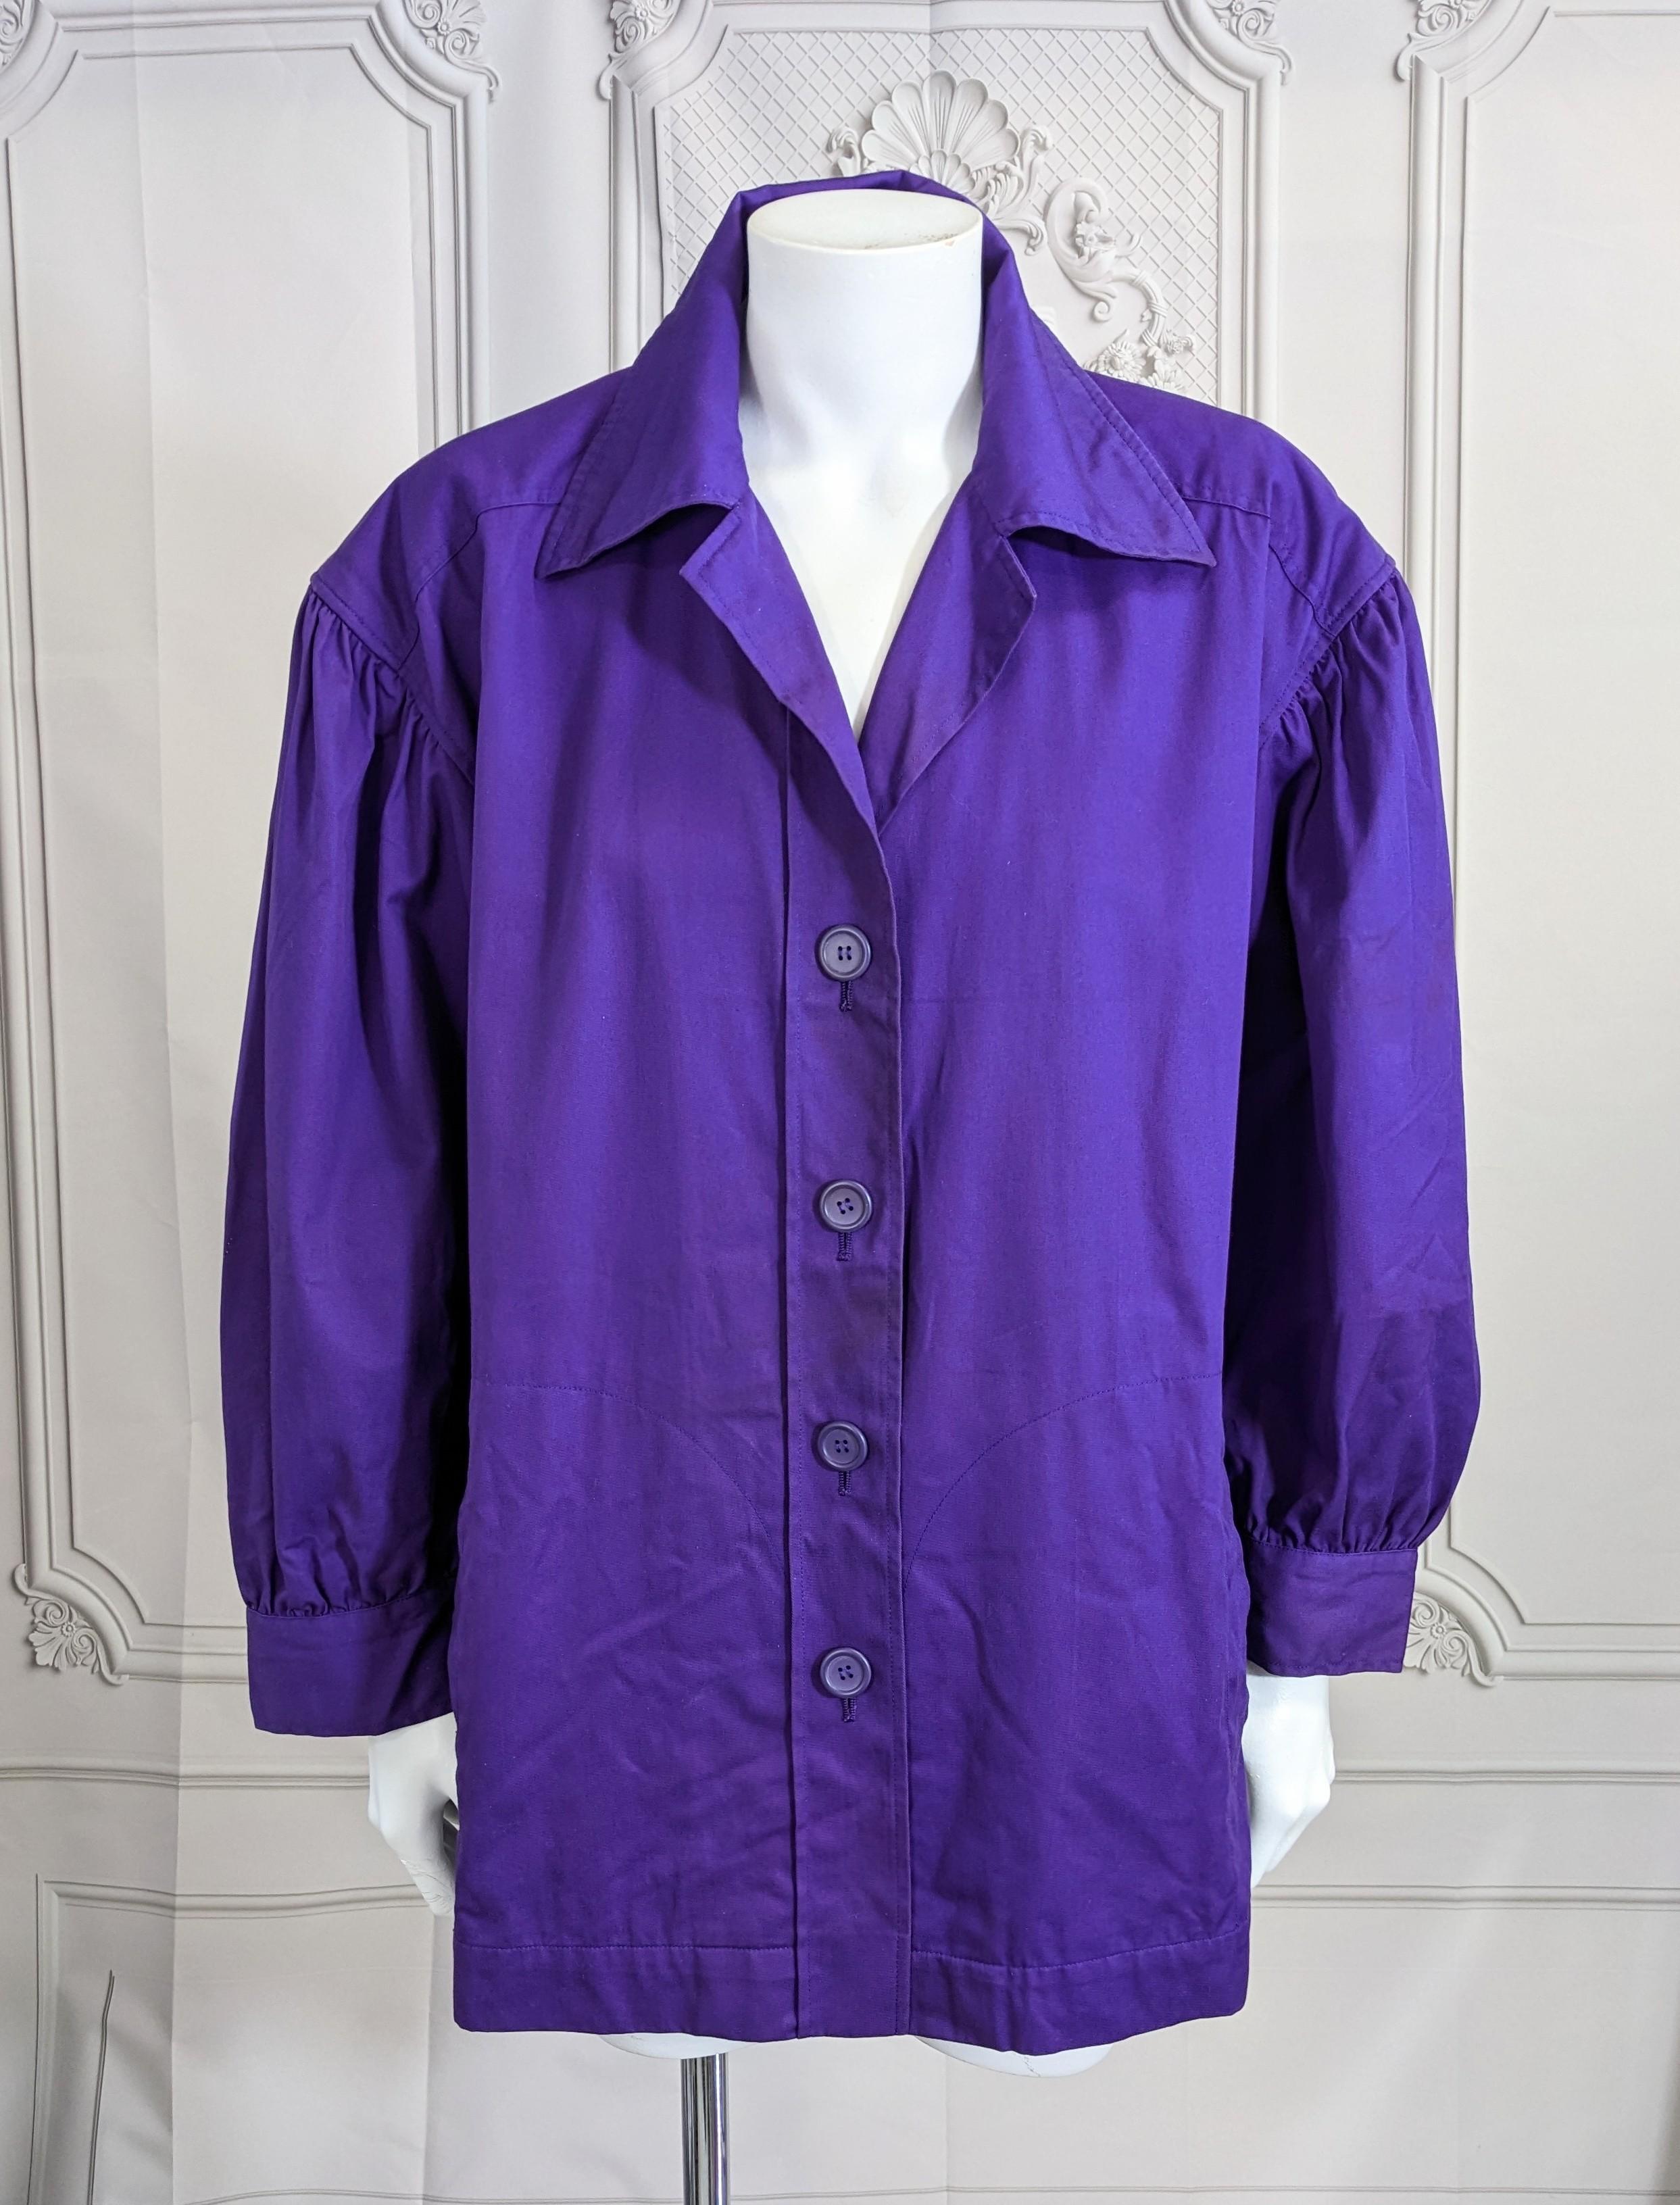 Frühe Yves Saint Laurent Violet Cotton Twill Jacke aus den 1970er Jahren. Französische Arbeitskleidung neu interpretiert von St. Laurent mit Puffärmeln, Schrägstrich-Taschen und leuchtenden Farben. Funktioniert auch gut mit Gürtel. Leichter